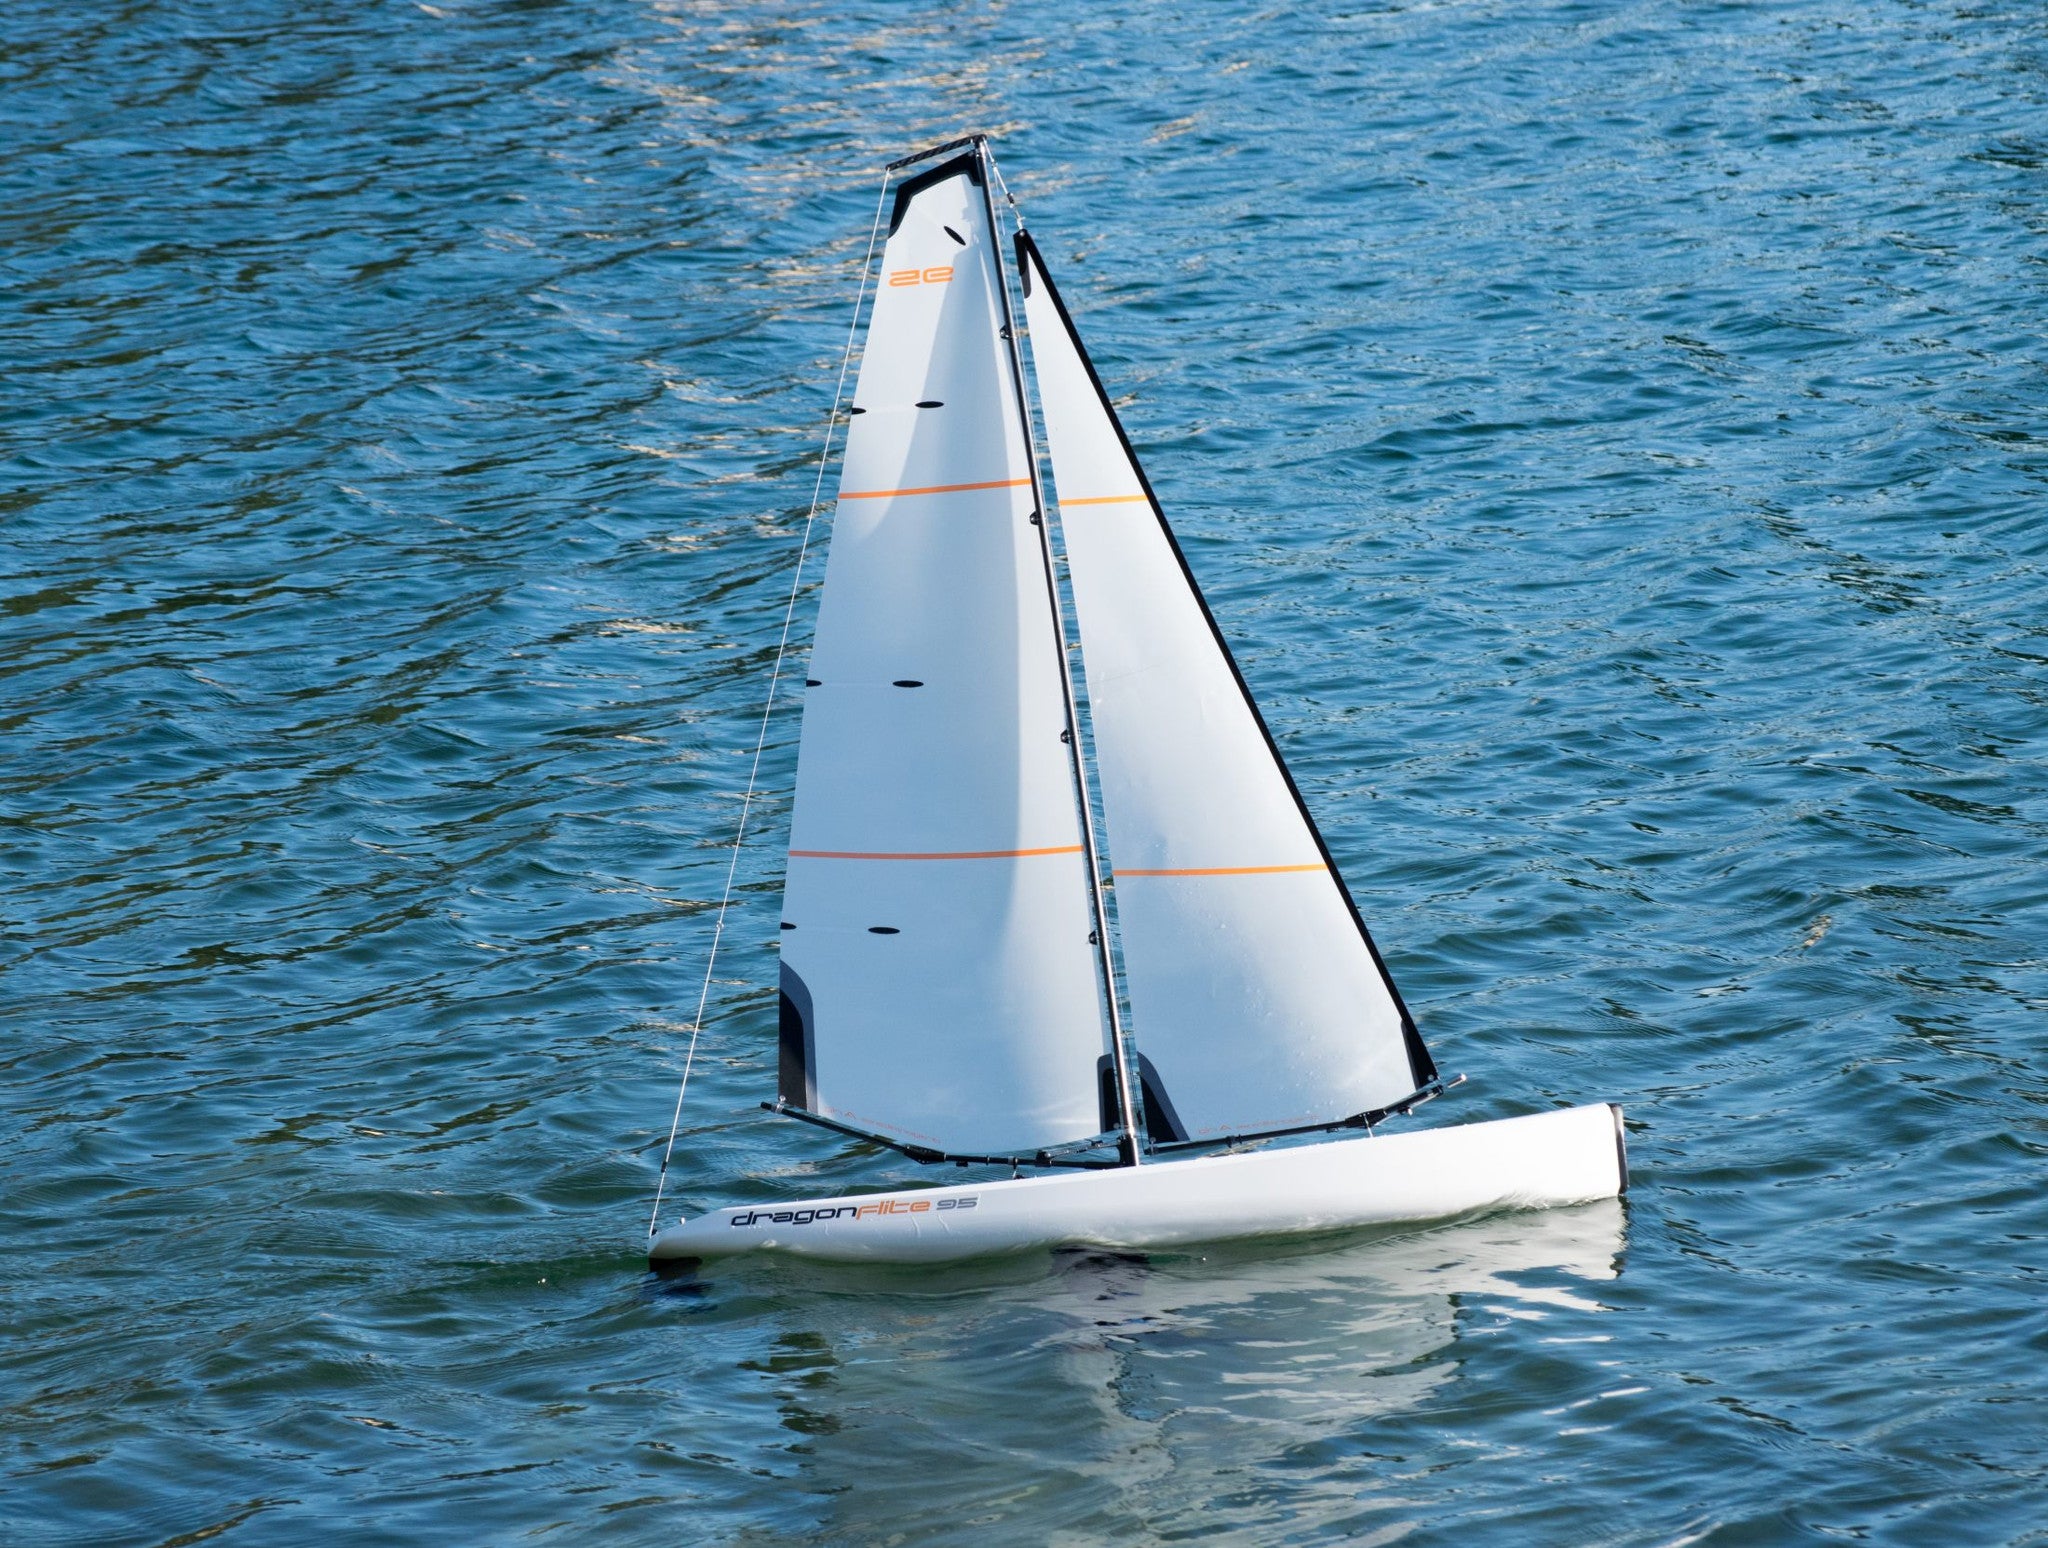 dragon 95 rc sailboat